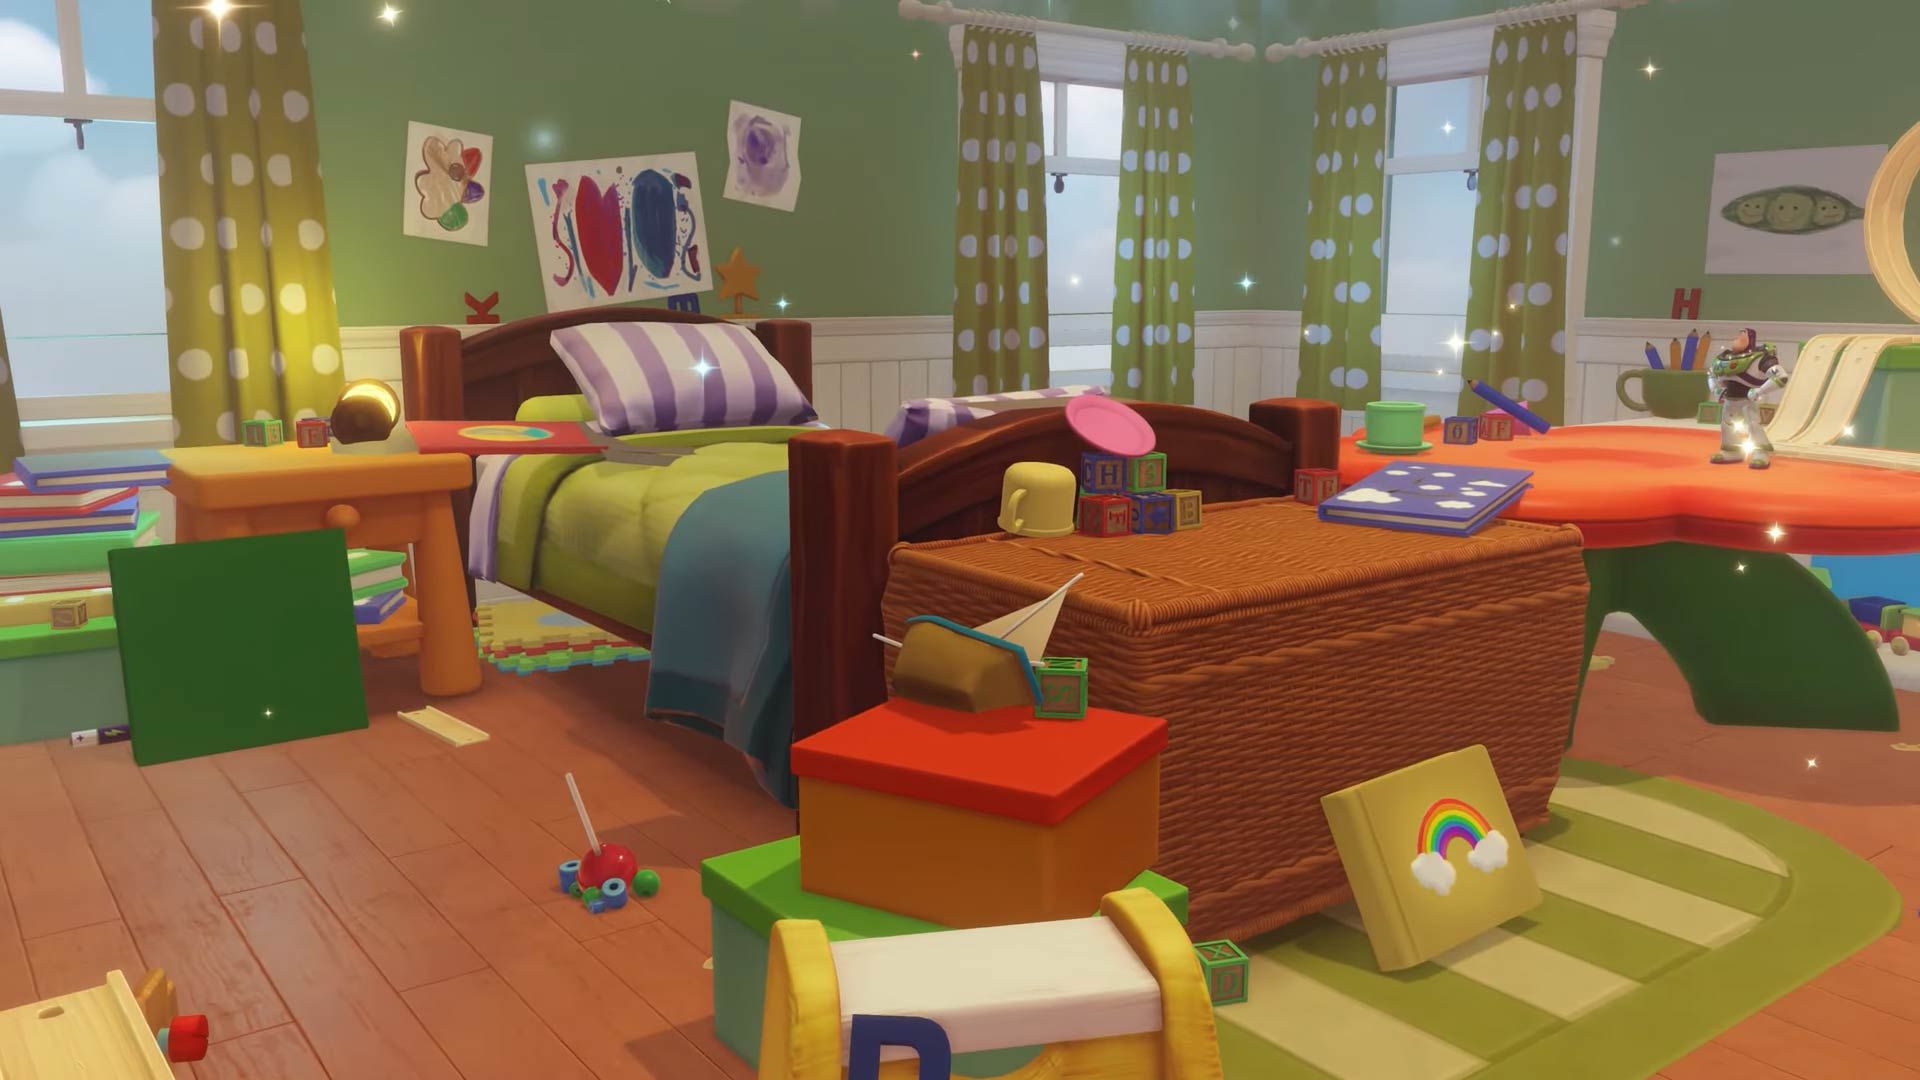 Uma captura de tela do quarto de Bonnie, também conhecido como Toy Story Realm, no Disney Dreamlight Valley